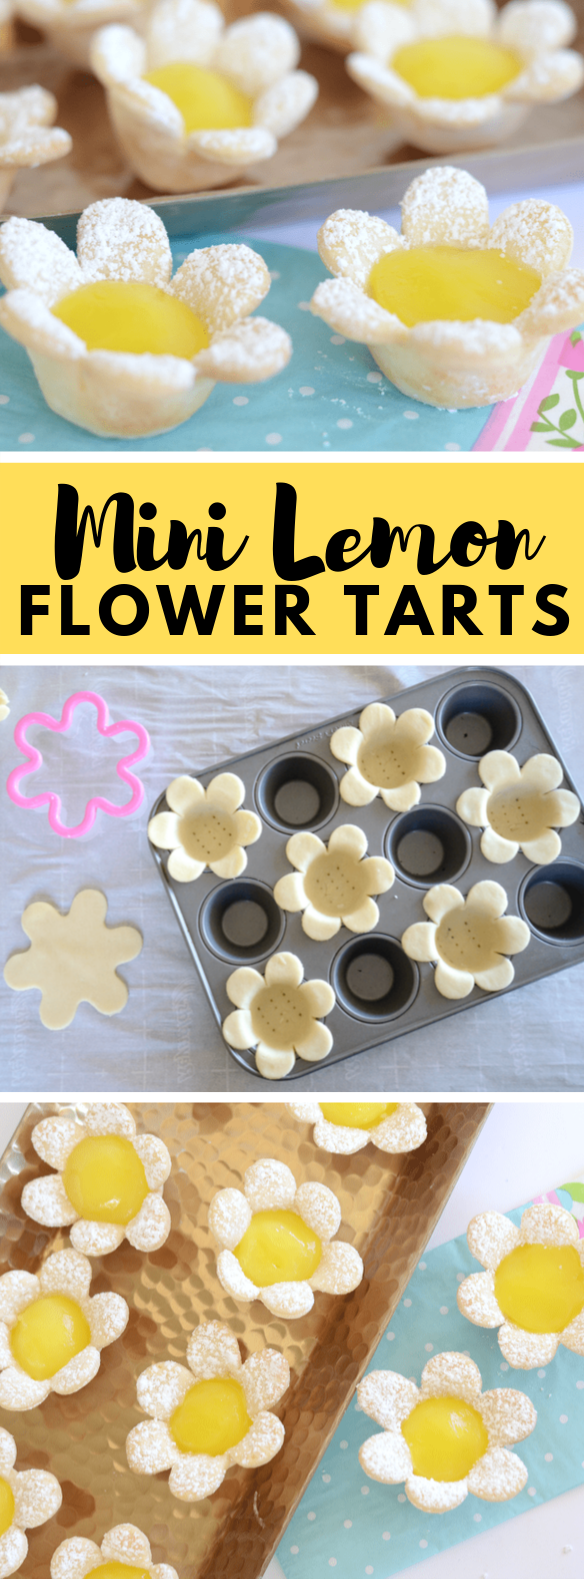 MINI LEMON FLOWER TARTS #desserts #easterdessert